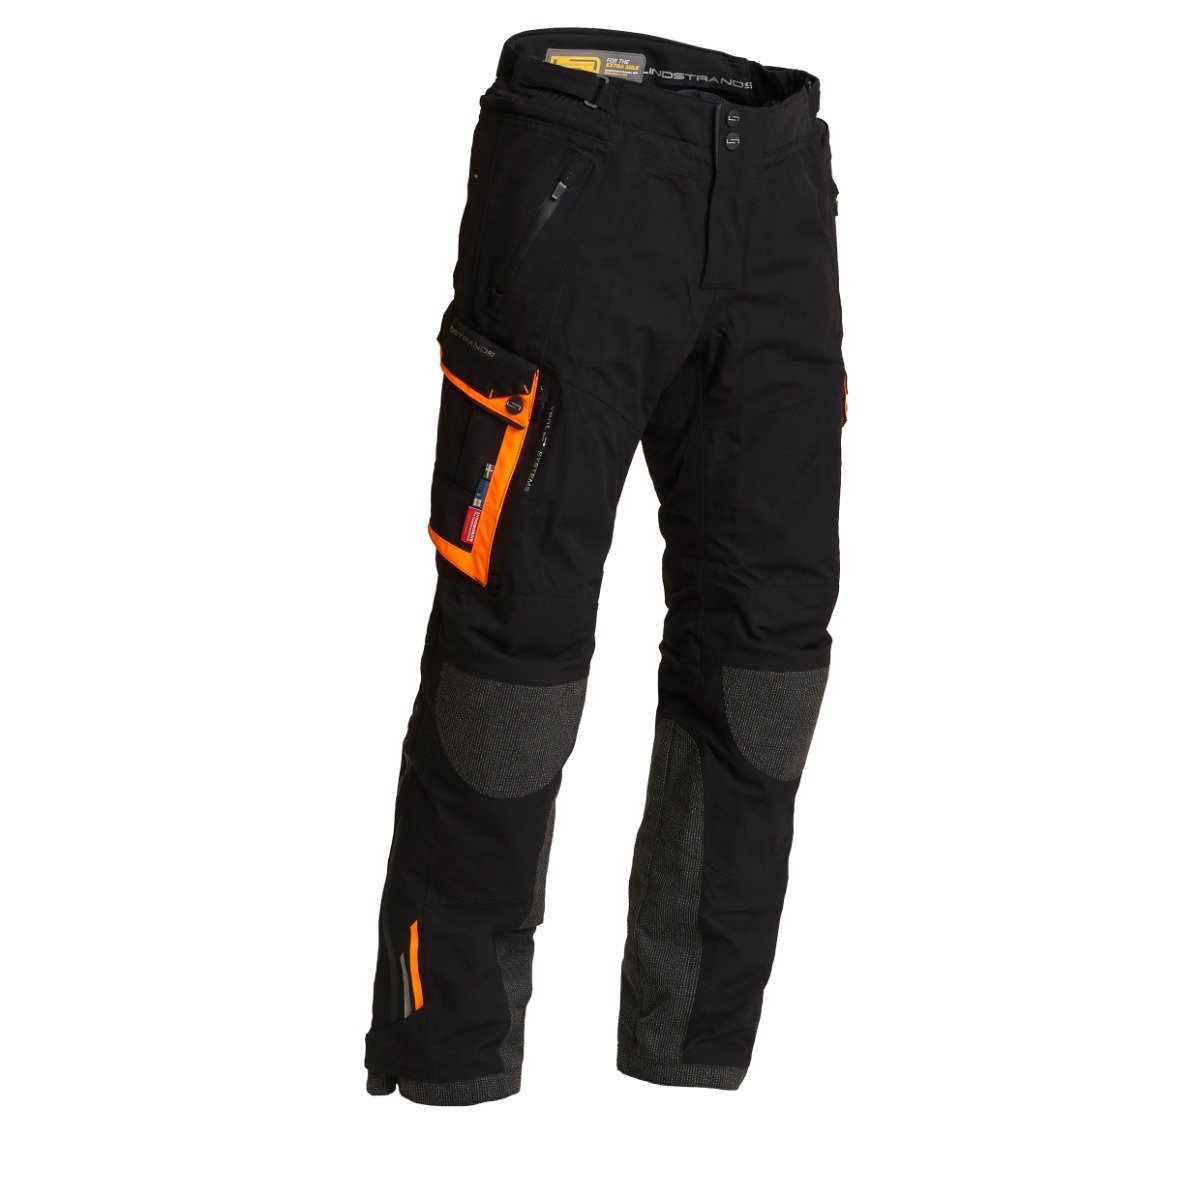 Image of Lindstrands Textile Pants Sunne Black Orange Size 50 ID 6438235187700